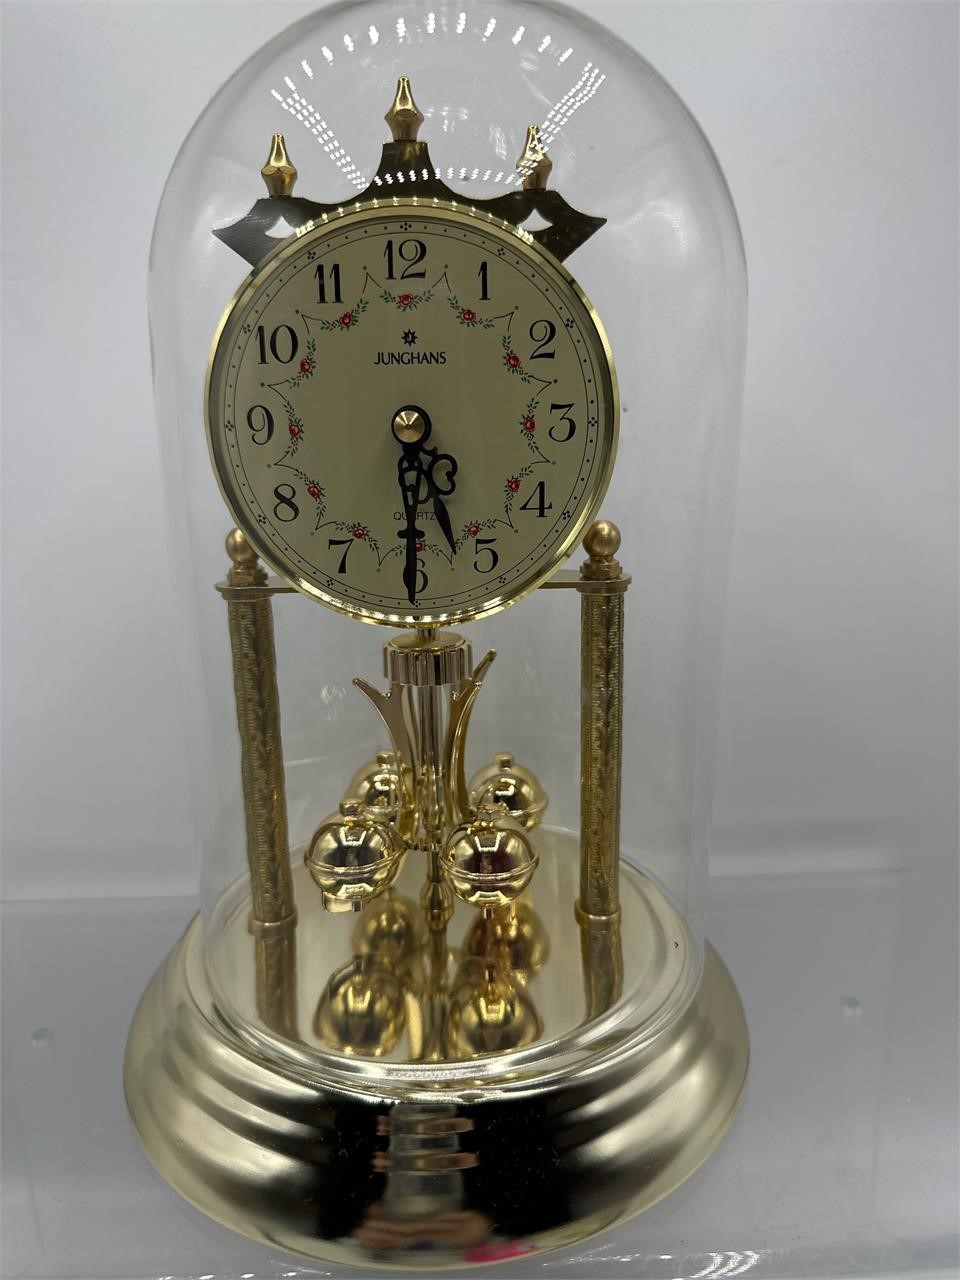 Junghans quartz anniversary clock